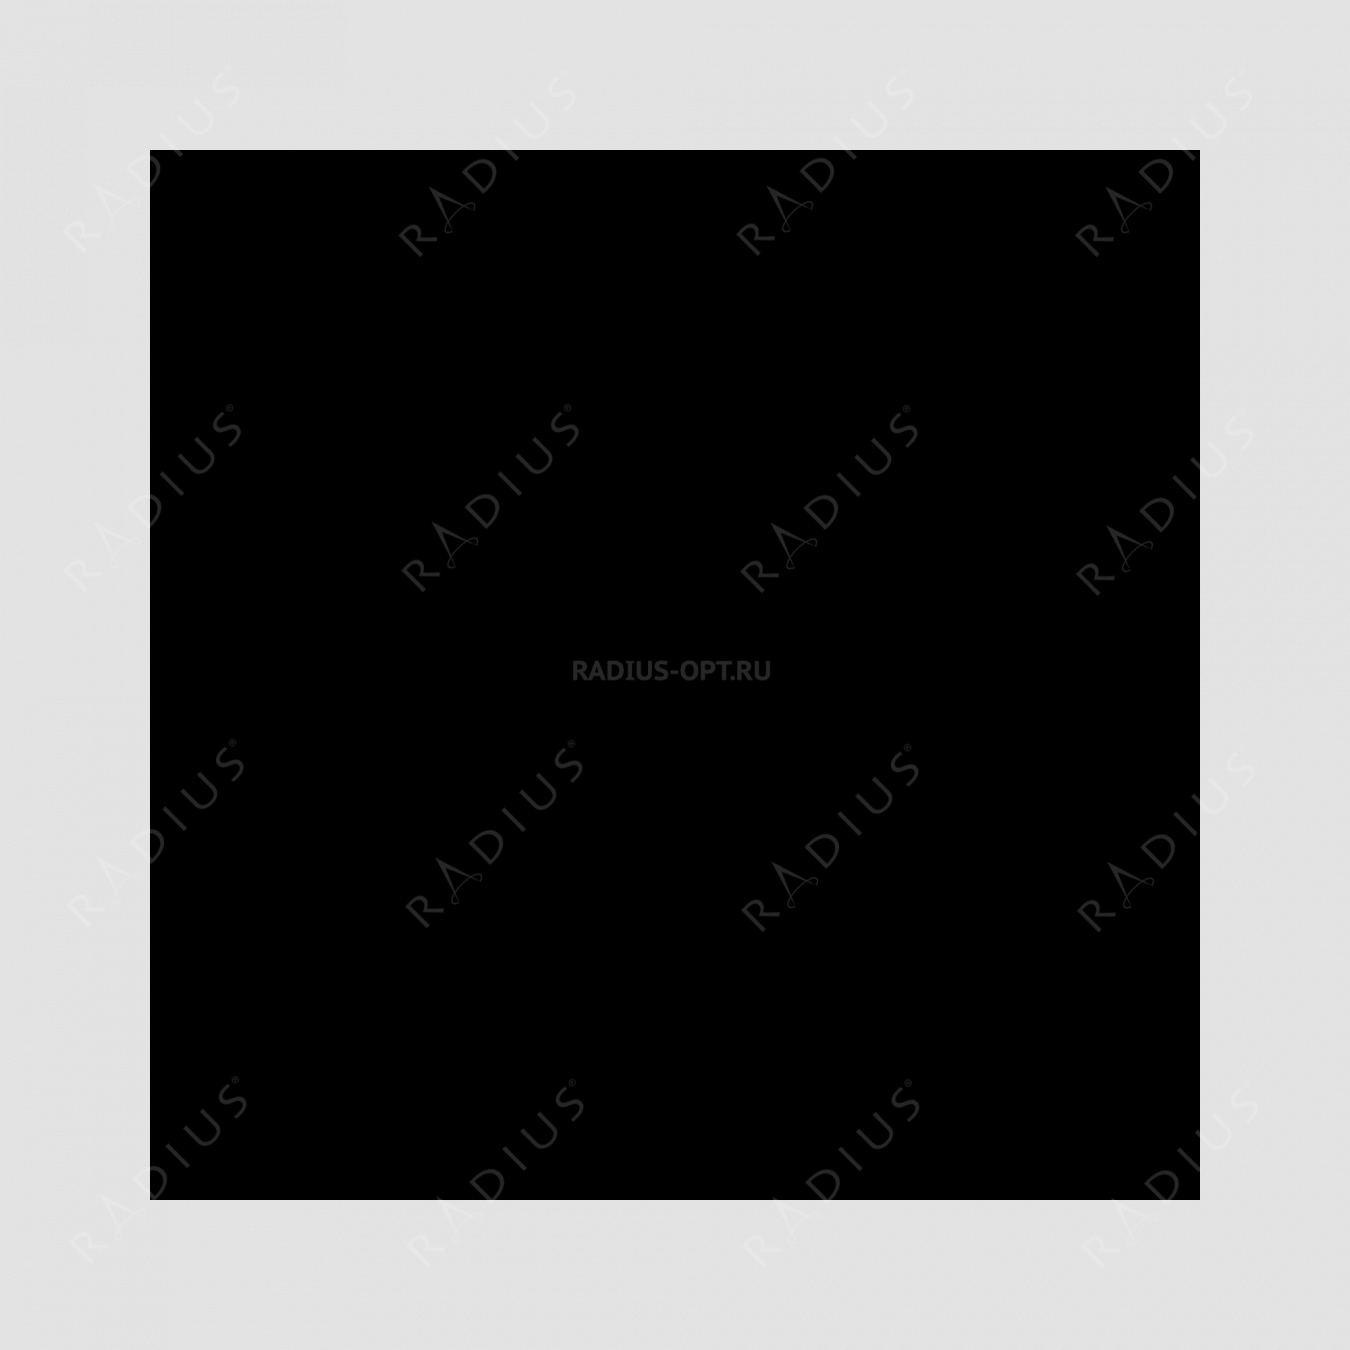 Кастрюля со стеклянной крышкой, диаметр 28 см, объем 6,3 л, чугун с эмалированным покрытием, цвет темно-серый, серия Taupe, INVICTA, Франция